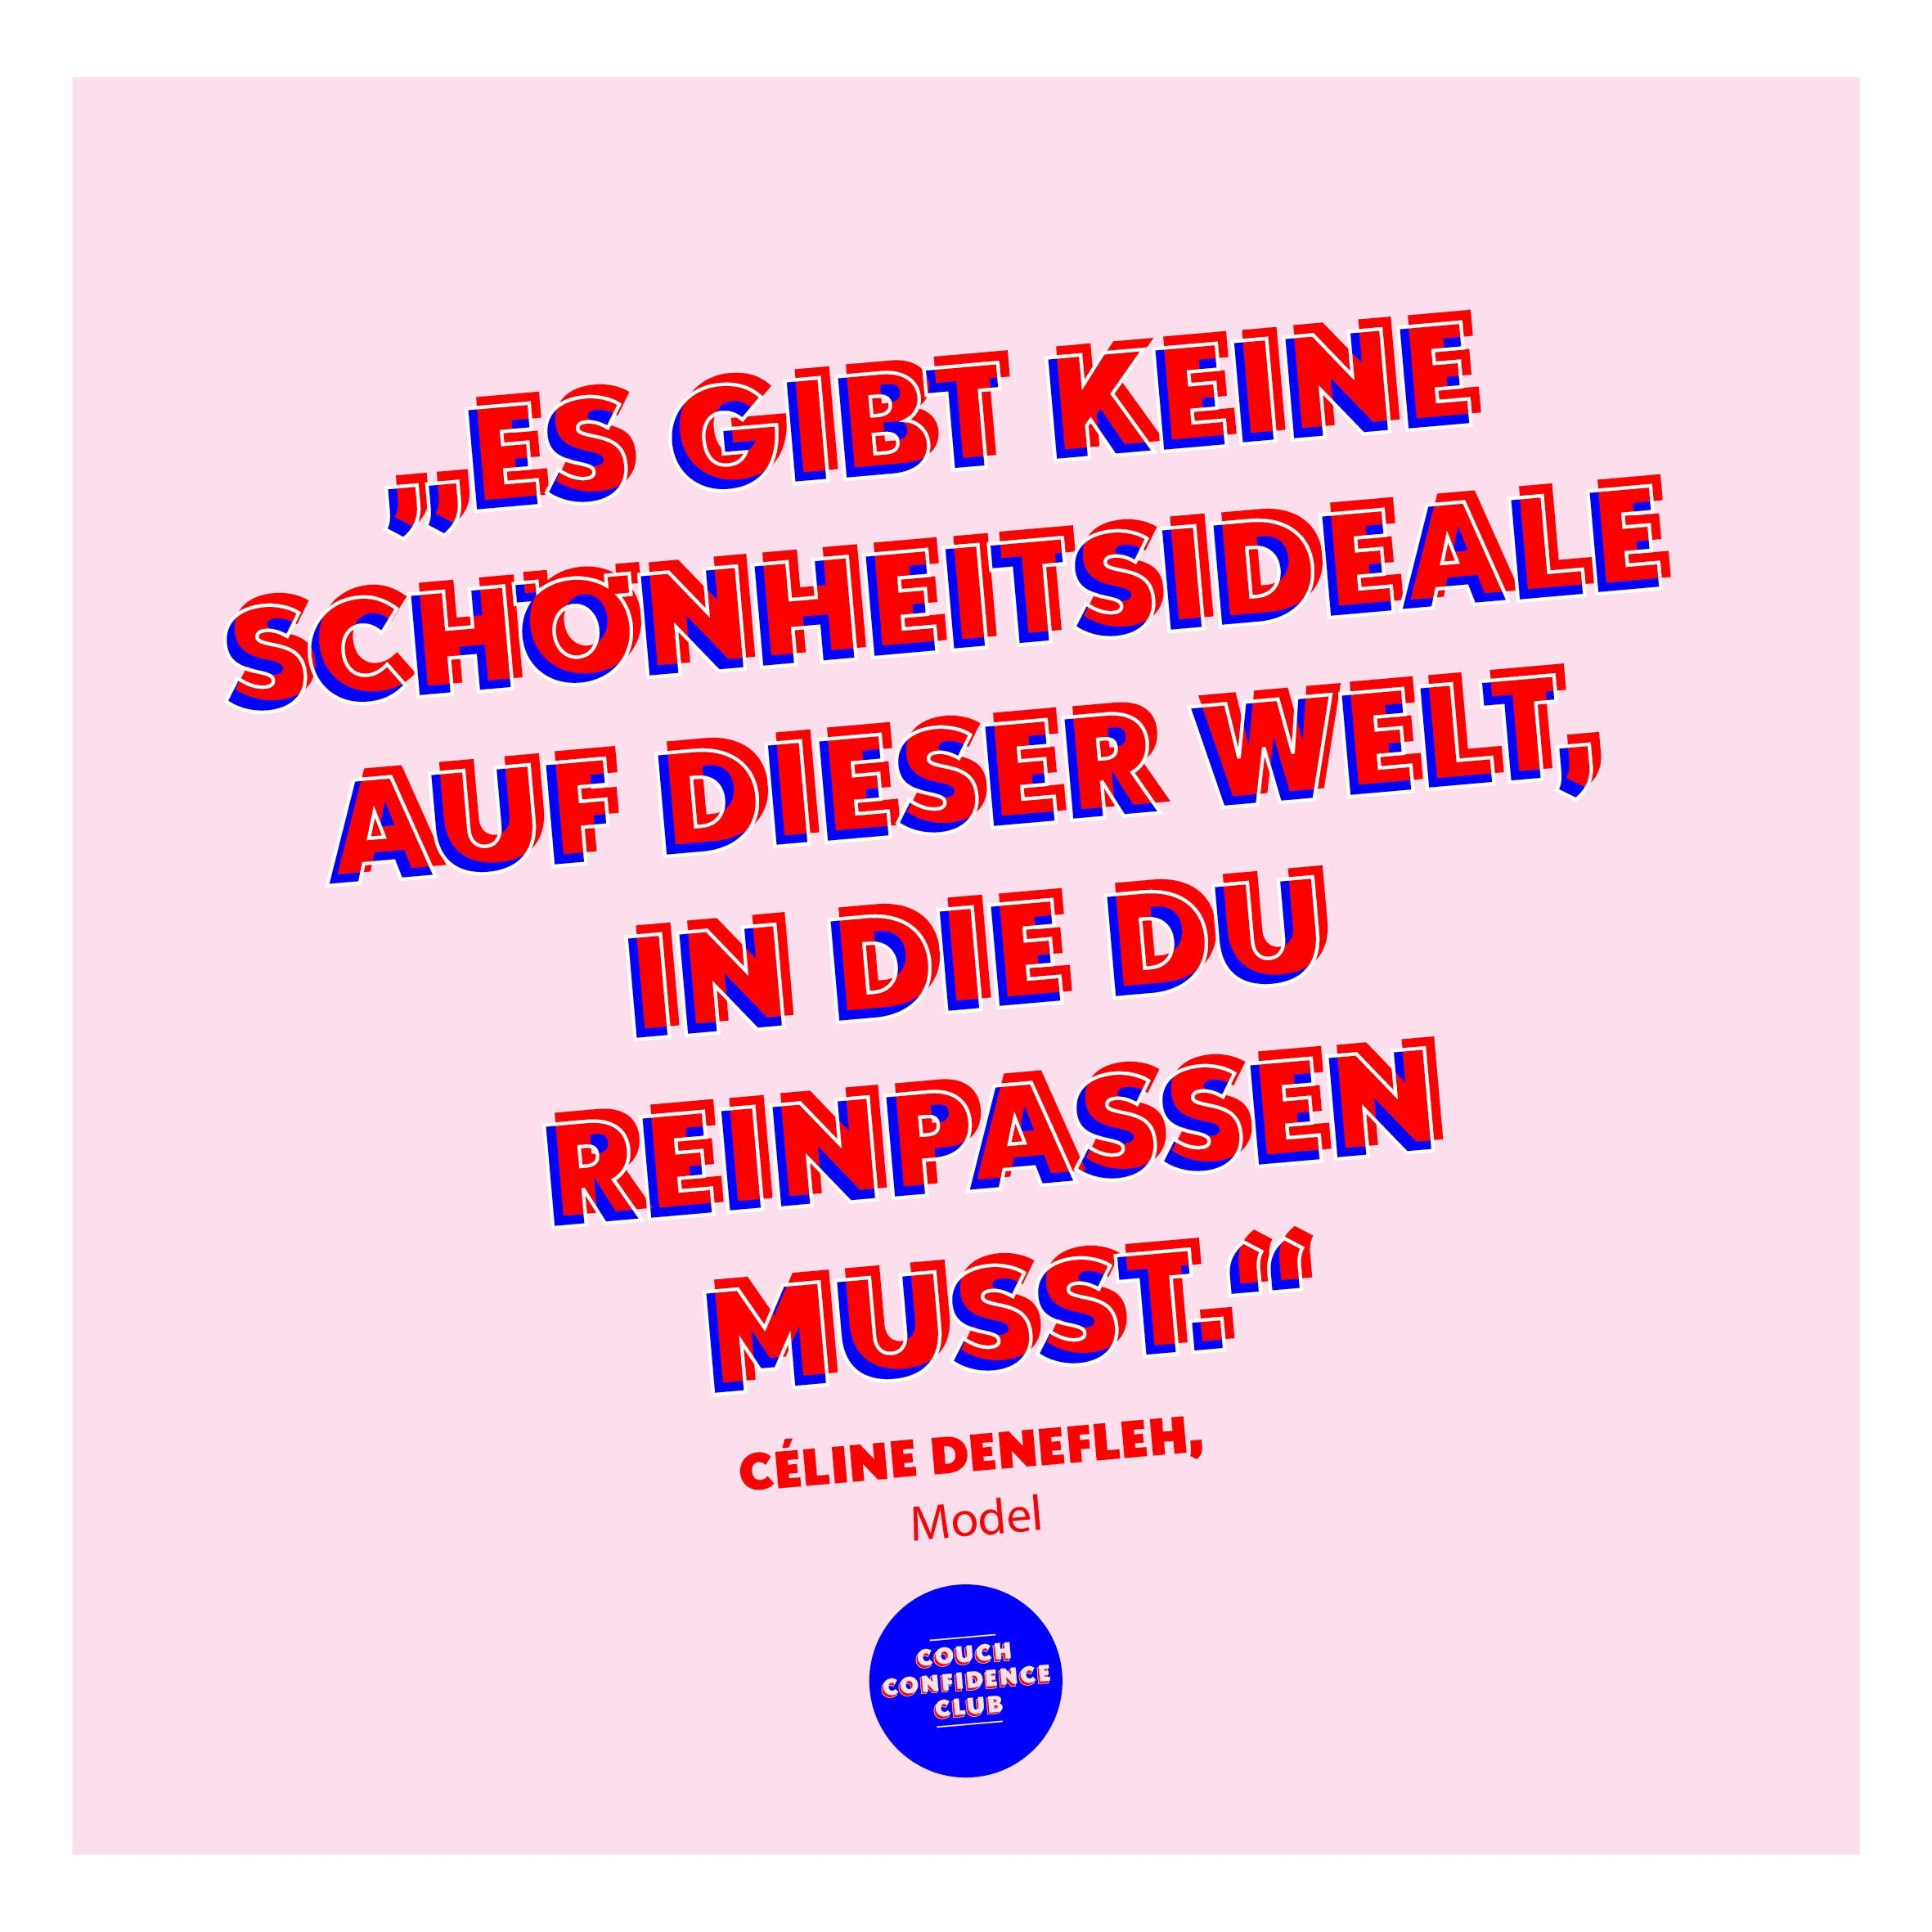 [Anzeige] Wichtige Message von Céline Denefleh im #COUCHconfidenceclub 🙌